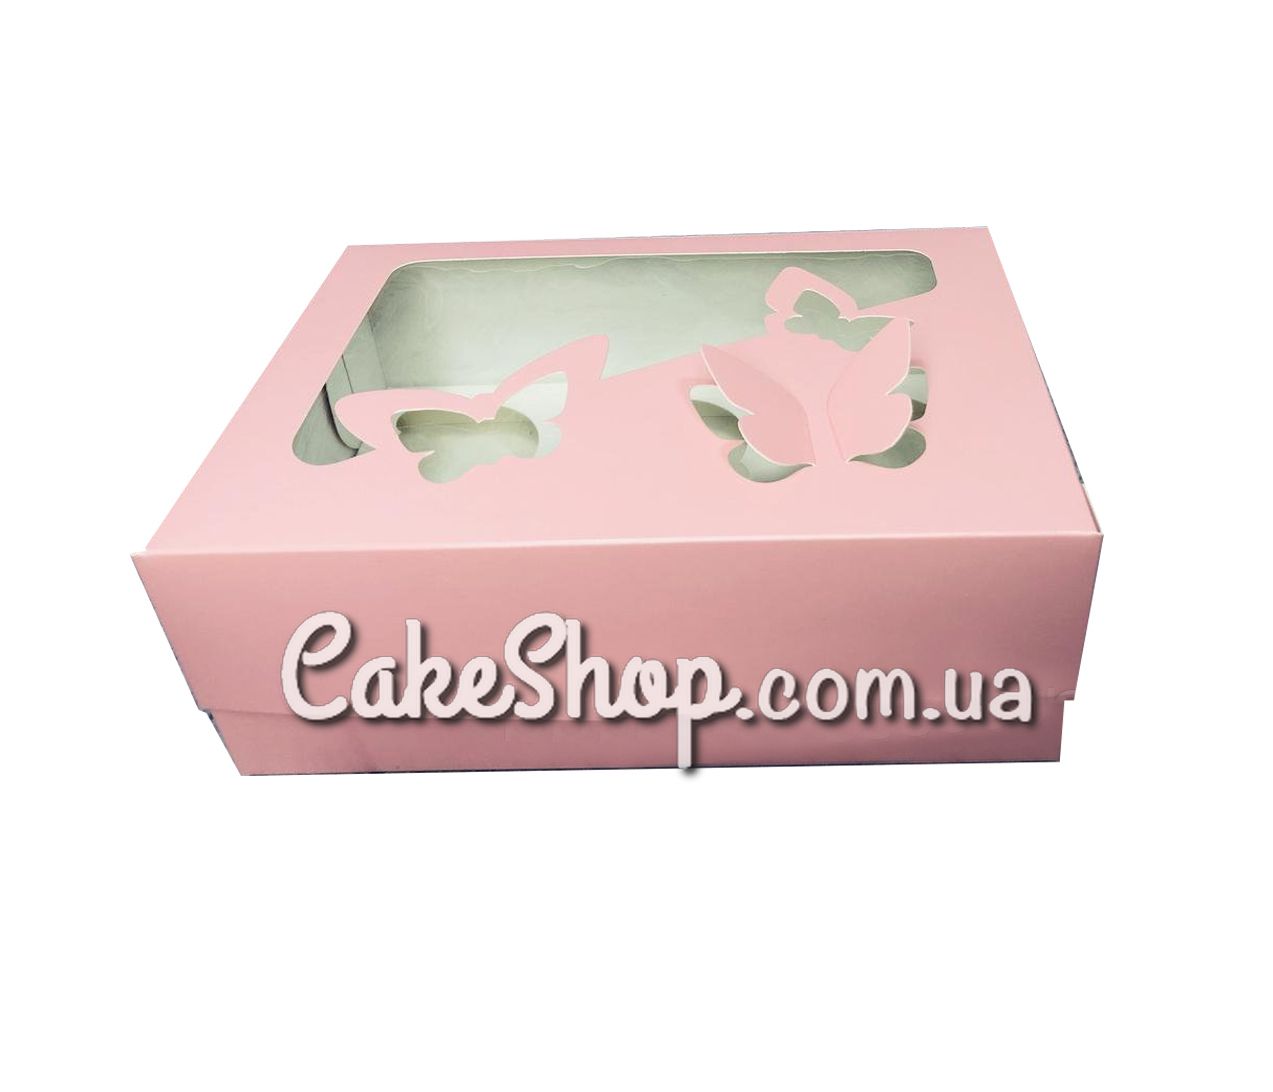 ⋗ Коробка на 6 кексов с бабочками Пудра, 25х18х9 см купить в Украине ➛ CakeShop.com.ua, фото